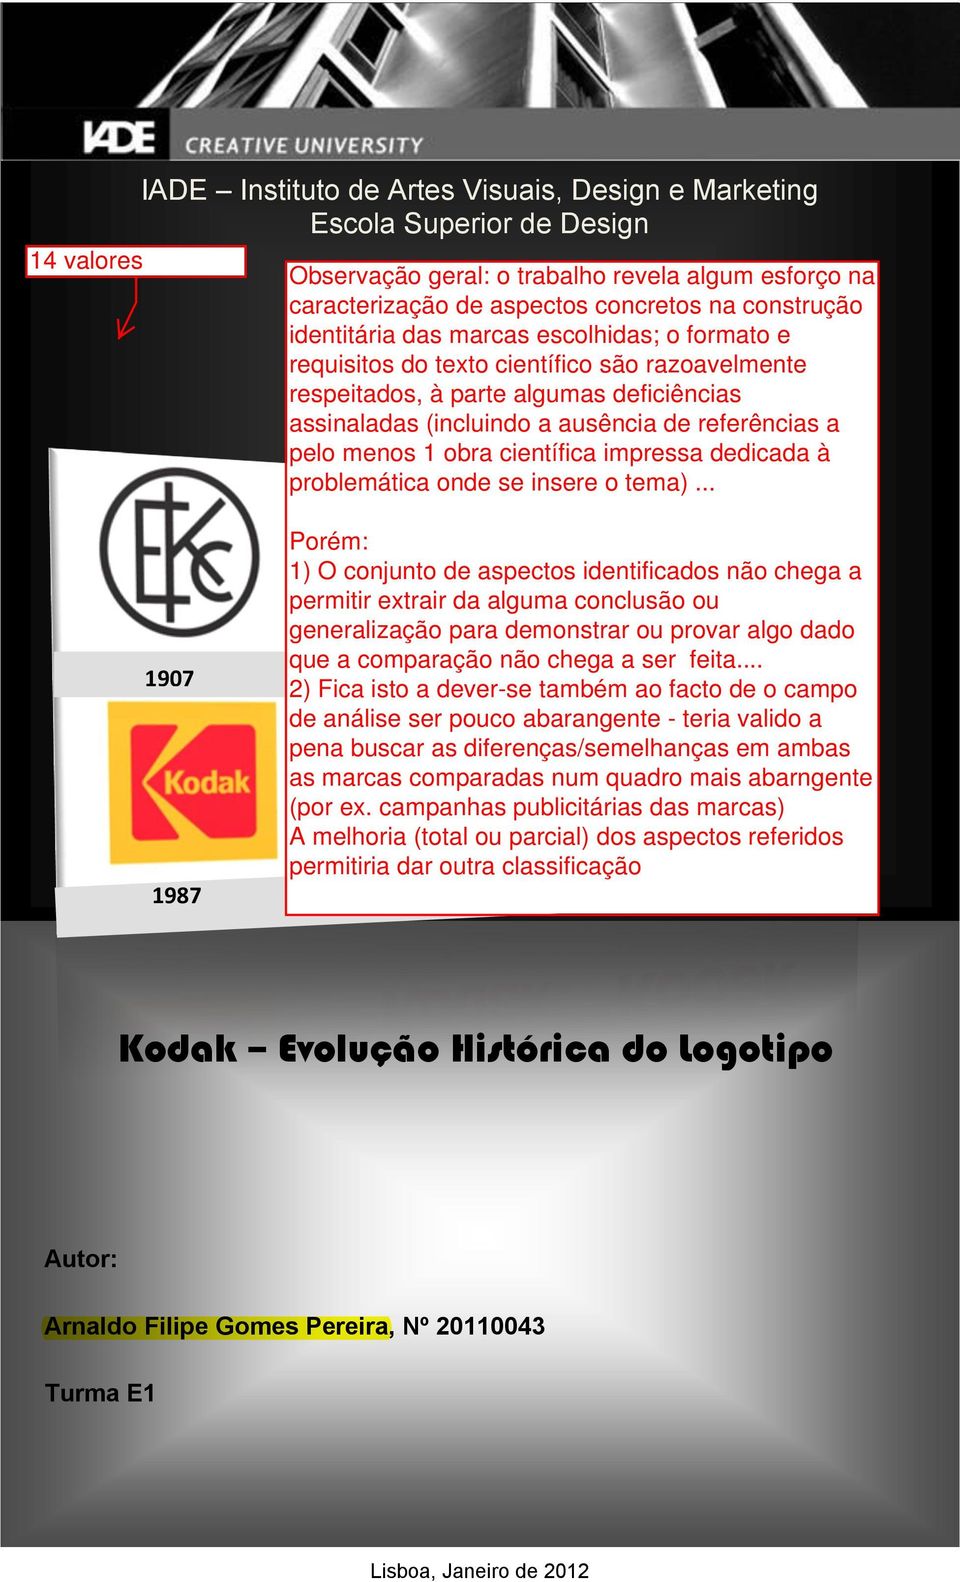 1960 1971 1987 1996 >2006 - Logotipo Actual 1971 Kodak Evolução Histórica do